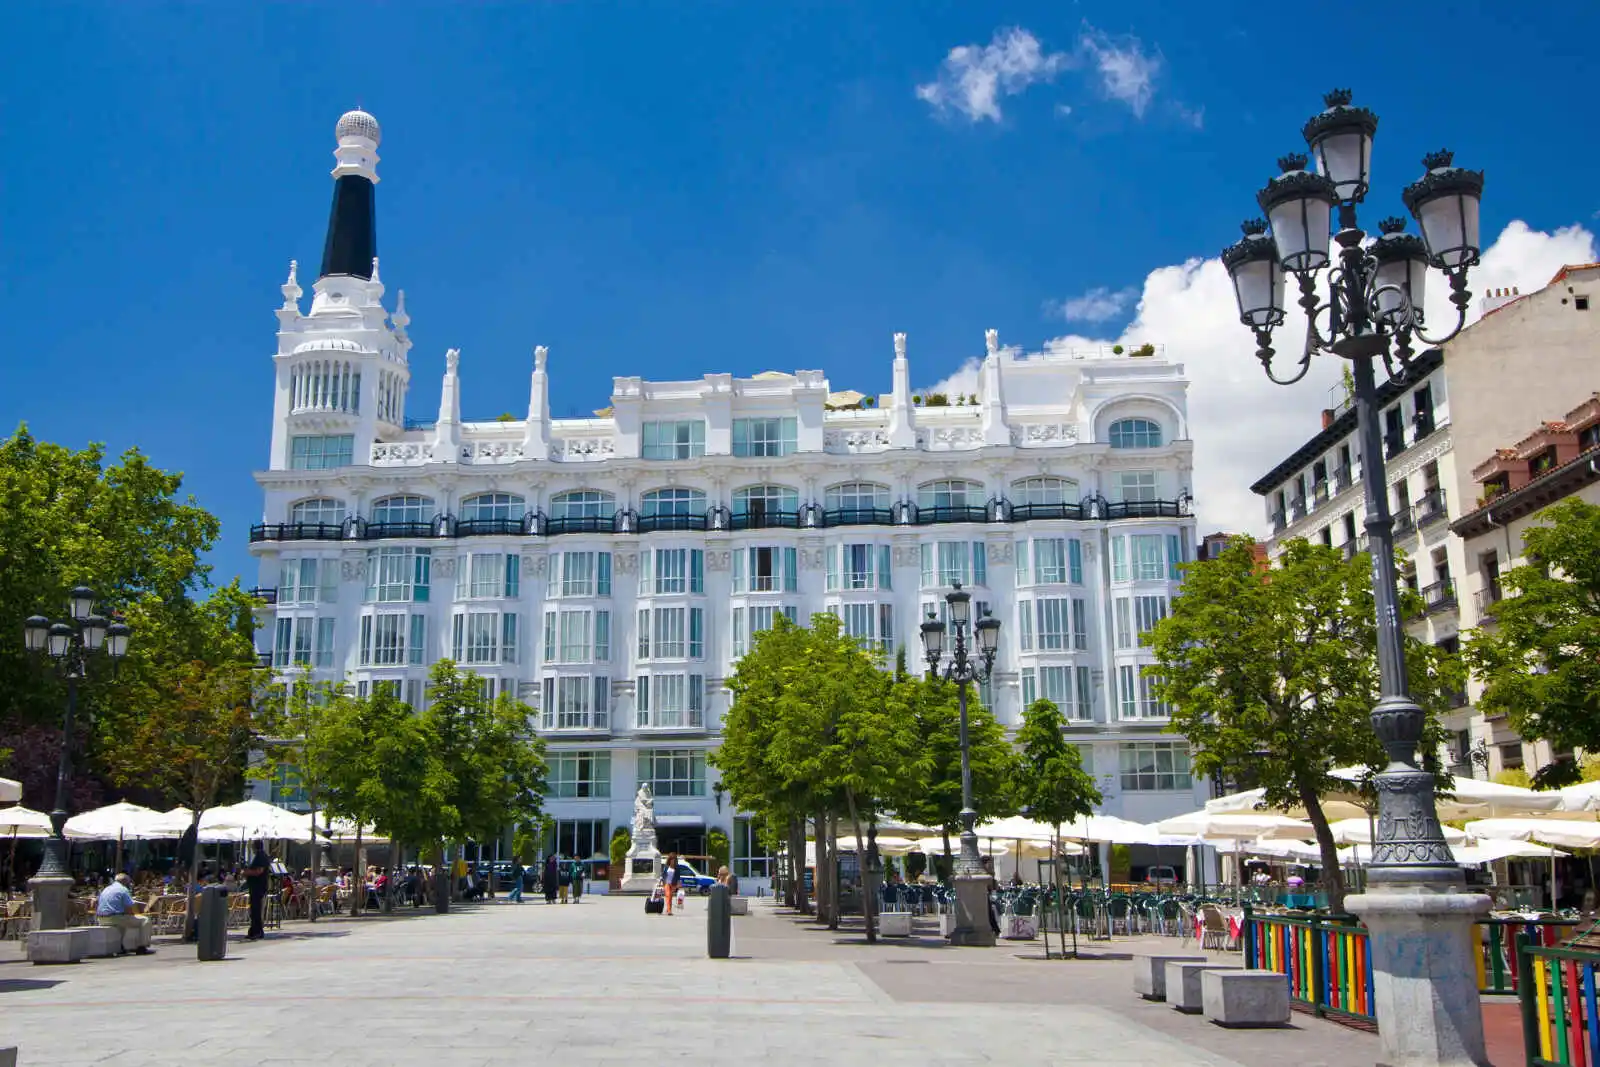 Plaza Santa Ana, Madrid